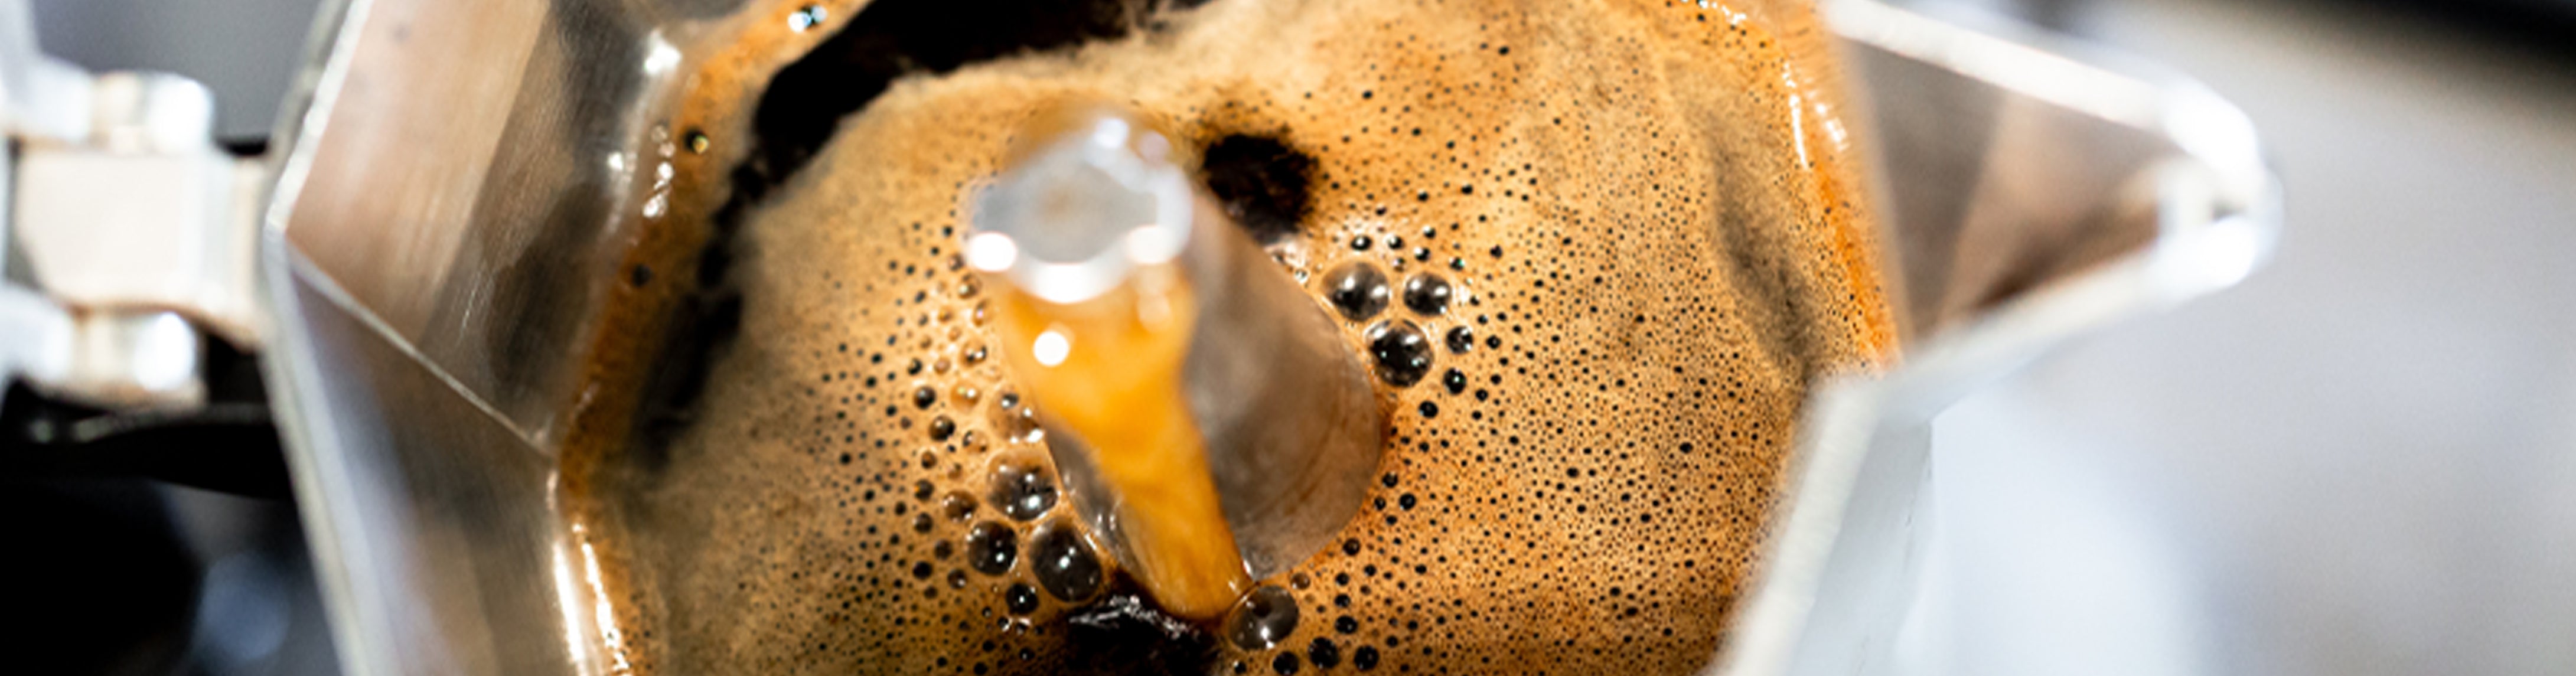 Alessi Espresso coffee maker 9090 manico forato, orange, 6 cups